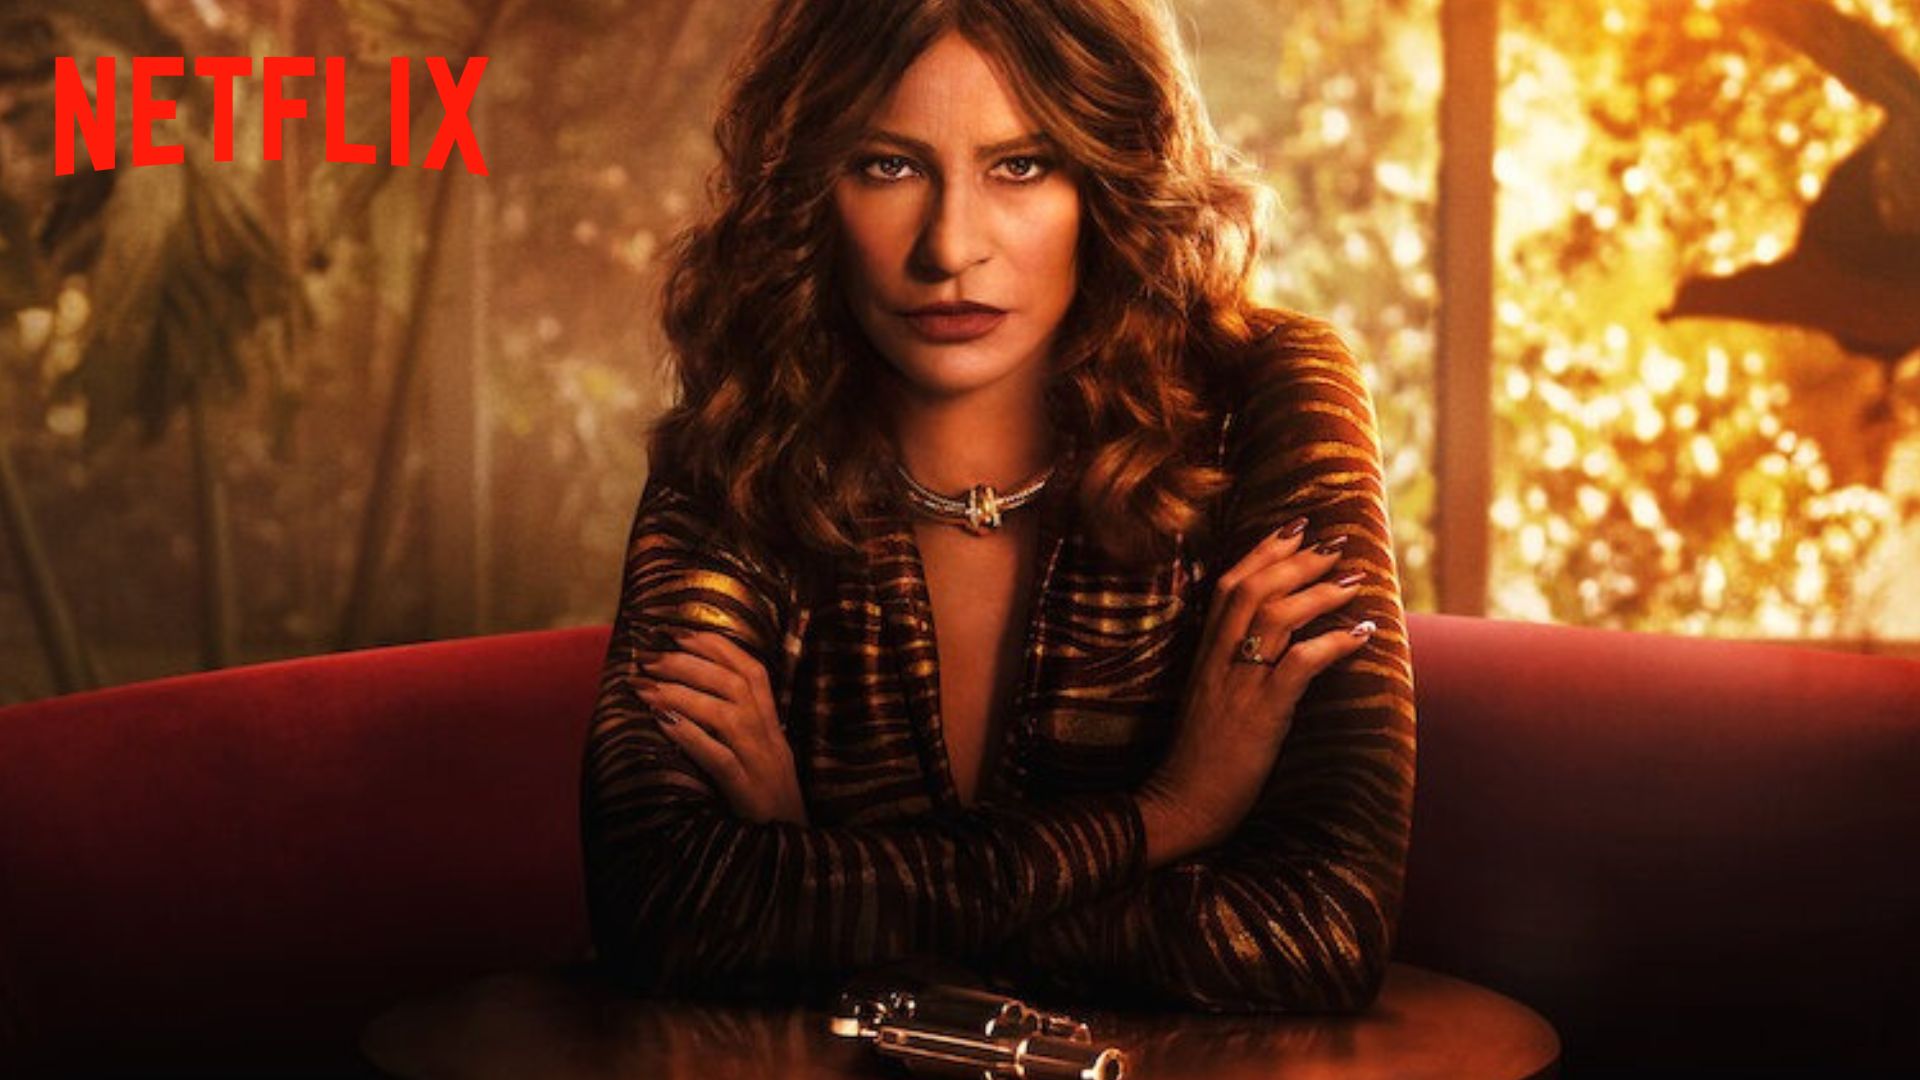 Griselda sur Netflix : c'est quoi cette série violente avec Sofía Vergara méconnaissable ?